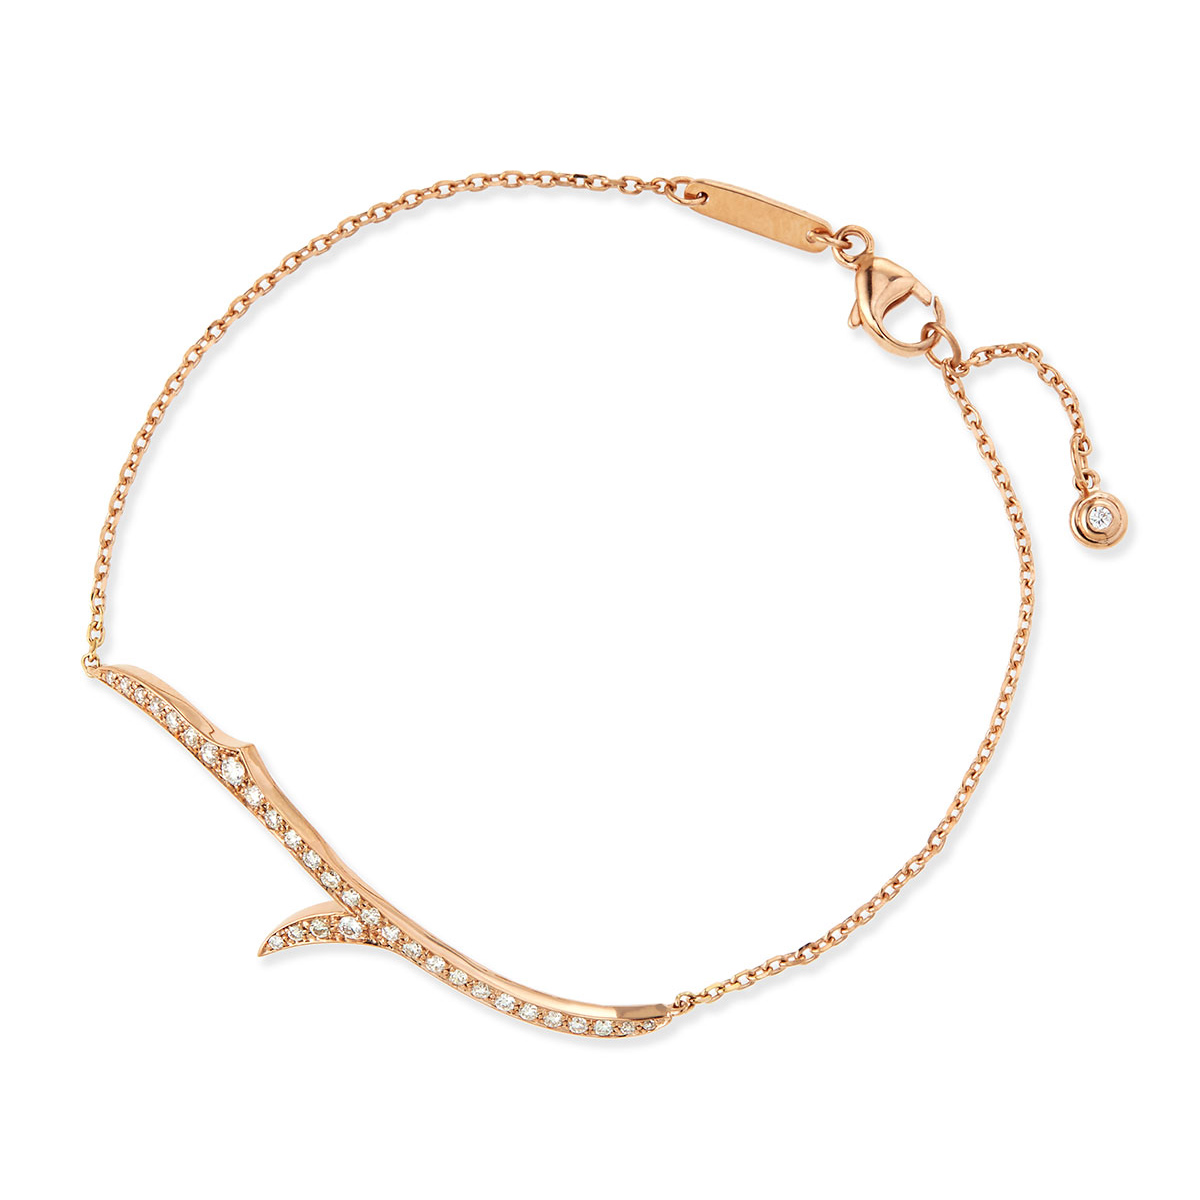 Atacado OEM / ODM joias OEM 18k pulseira de ouro rosa oferecendo serviço de joias personalizadas